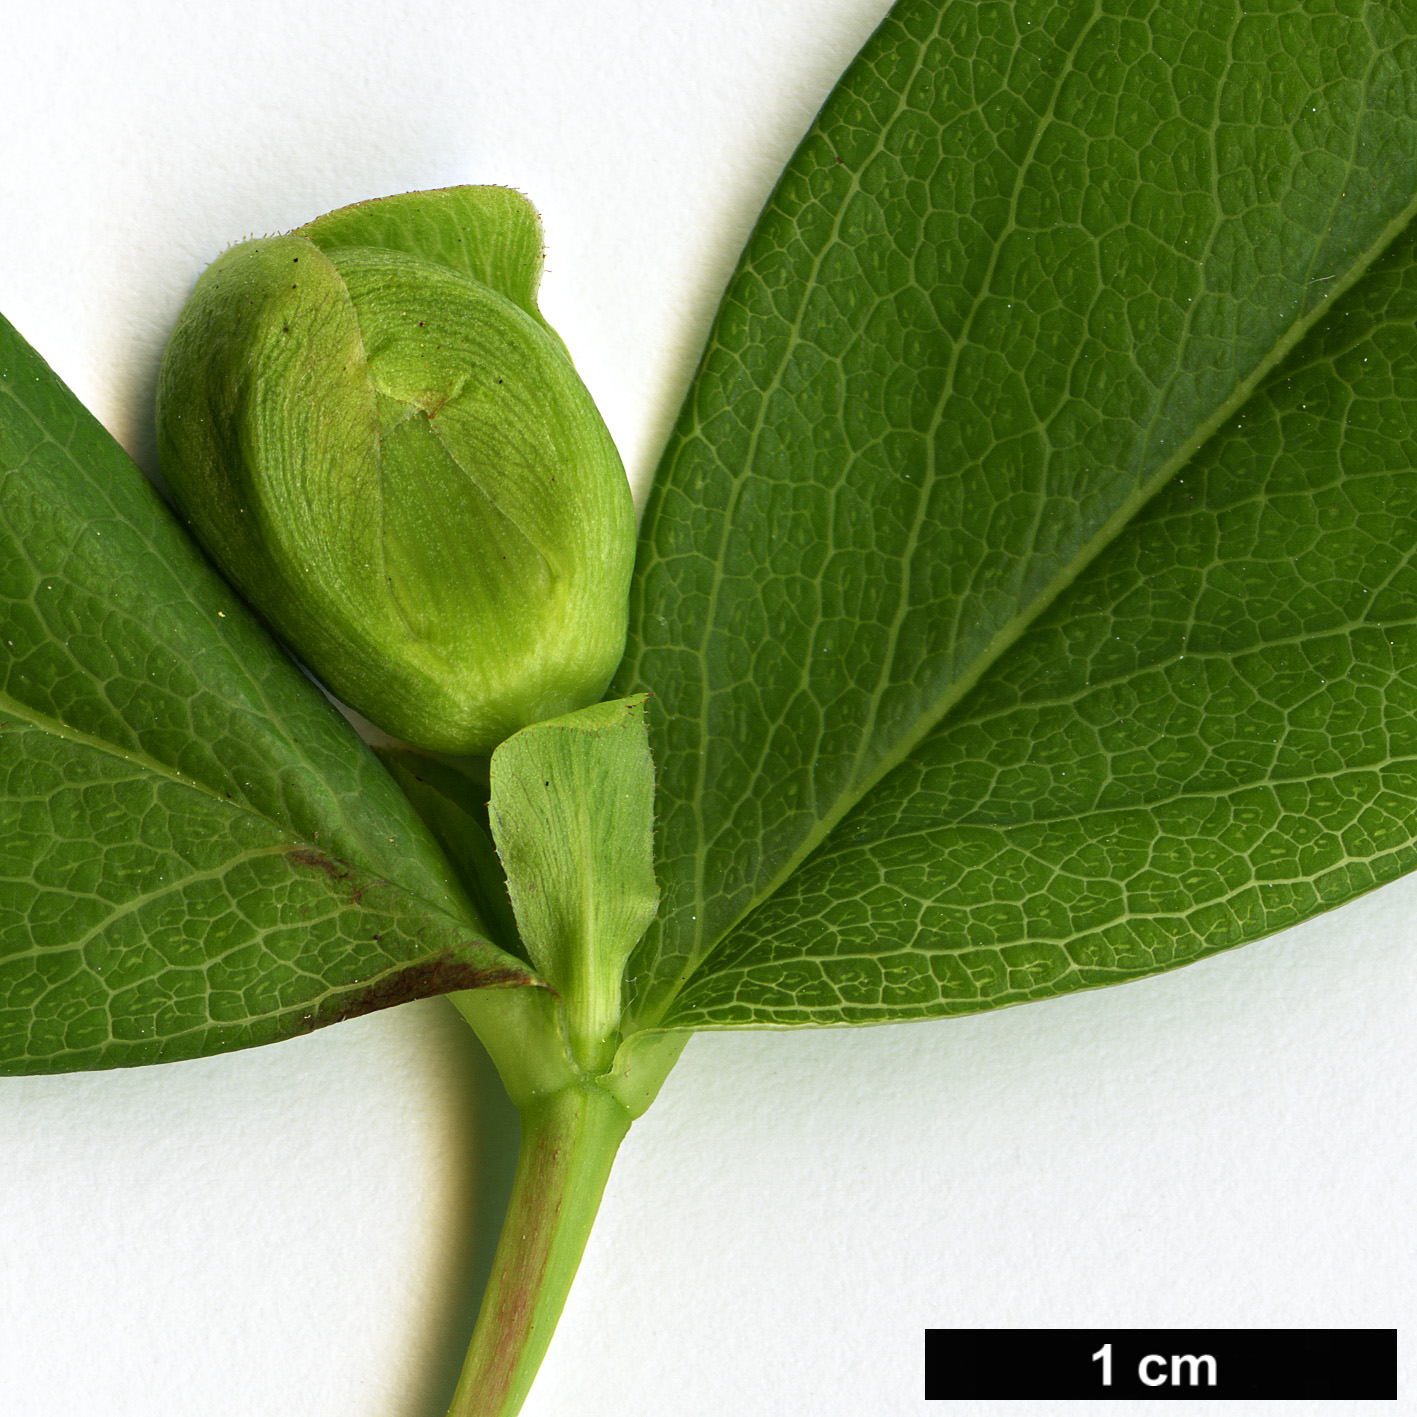 High resolution image: Family: Hypericaceae - Genus: Hypericum - Taxon: calycinum - SpeciesSub: f. luteum